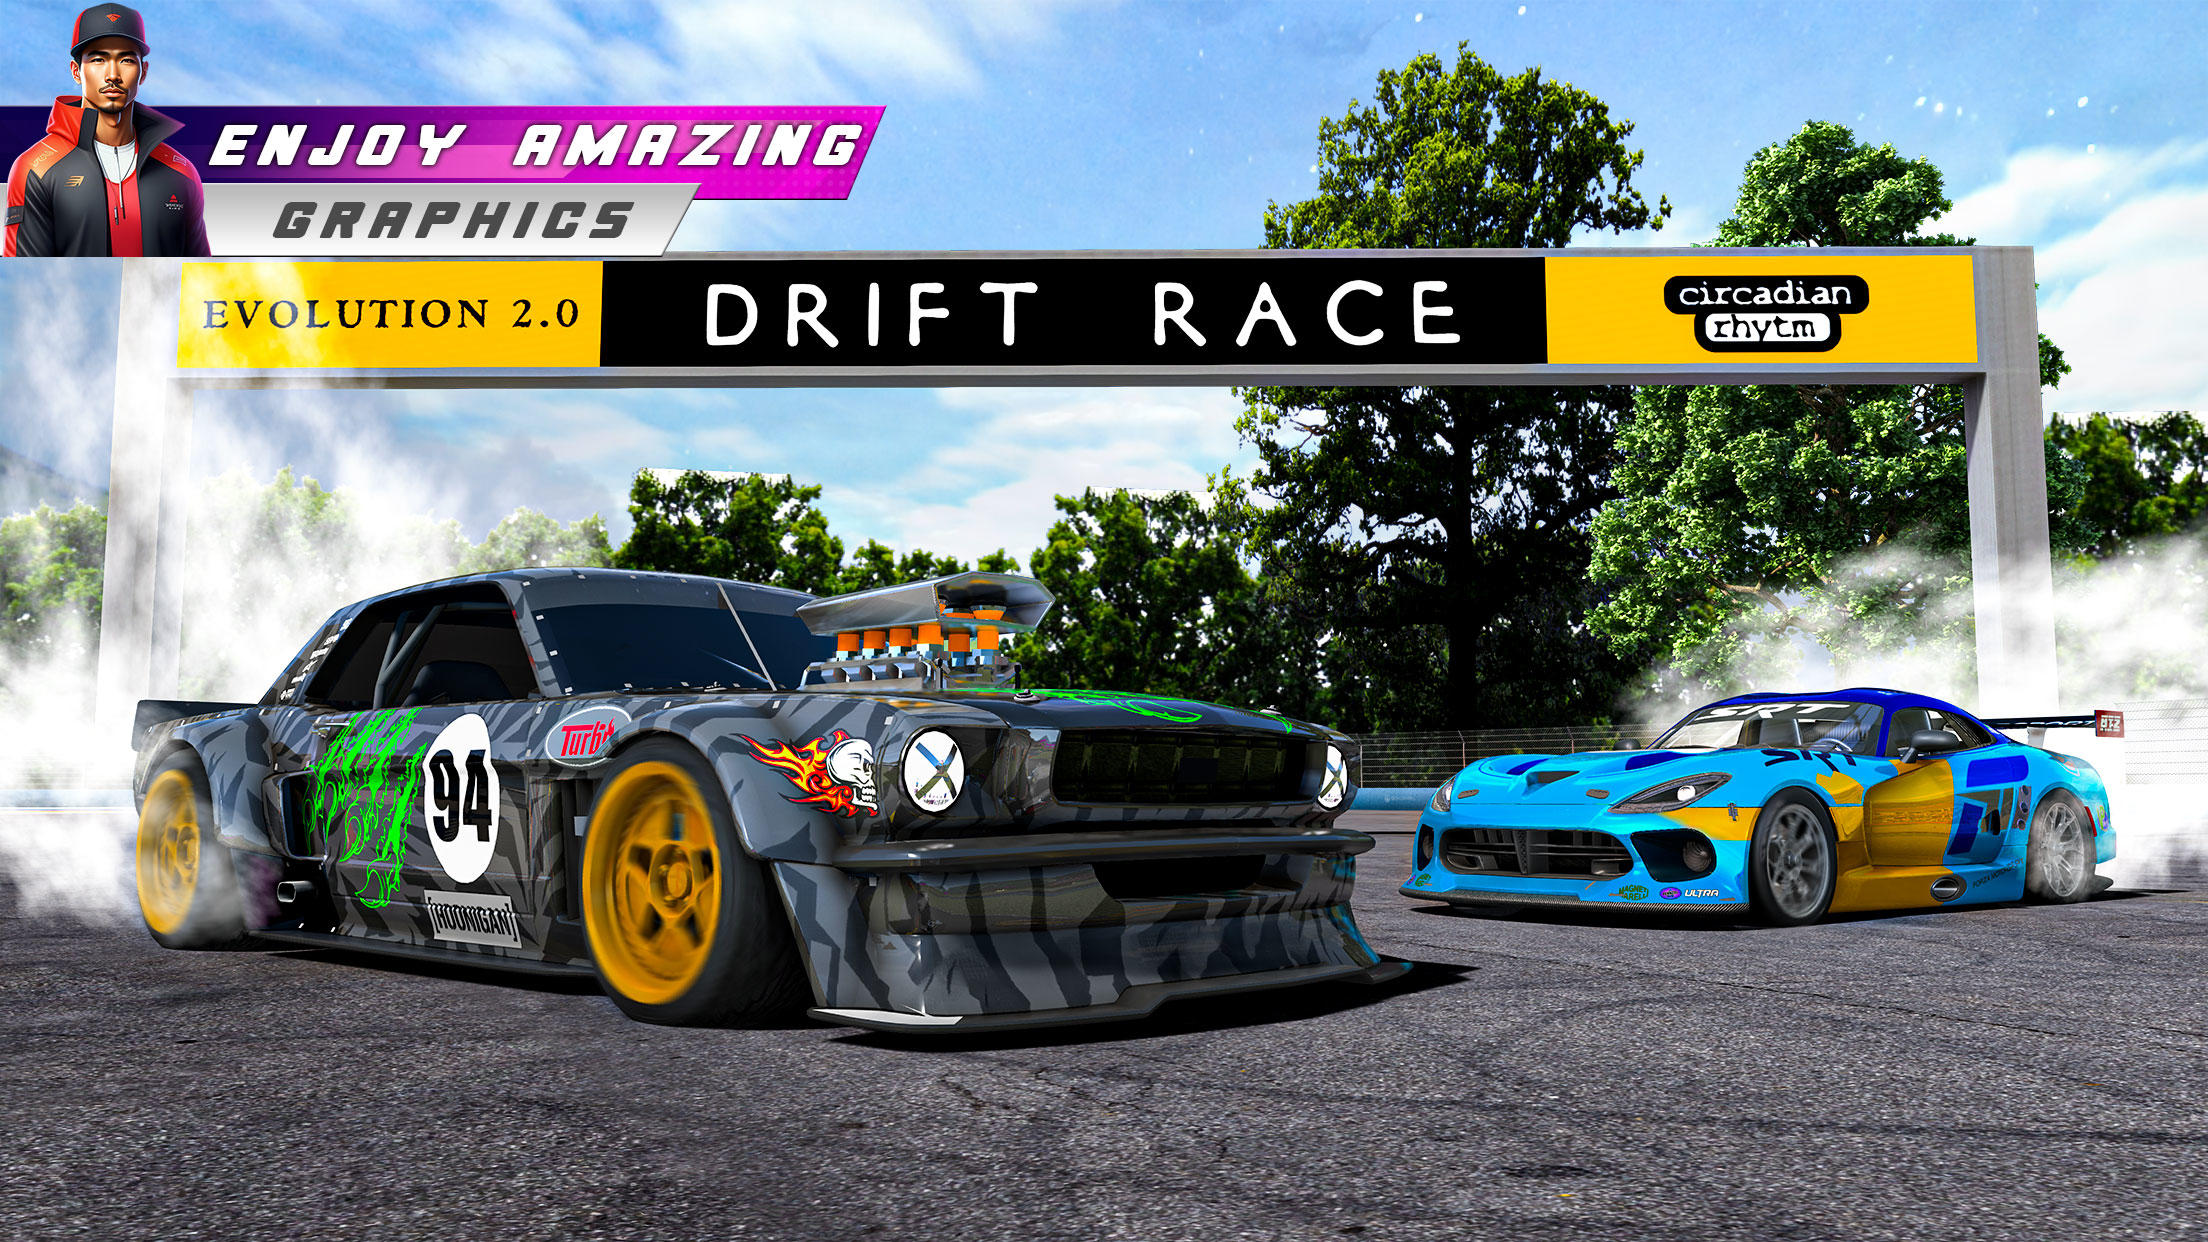 Jogos De Carros Drift Offline versão móvel andróide iOS apk baixar